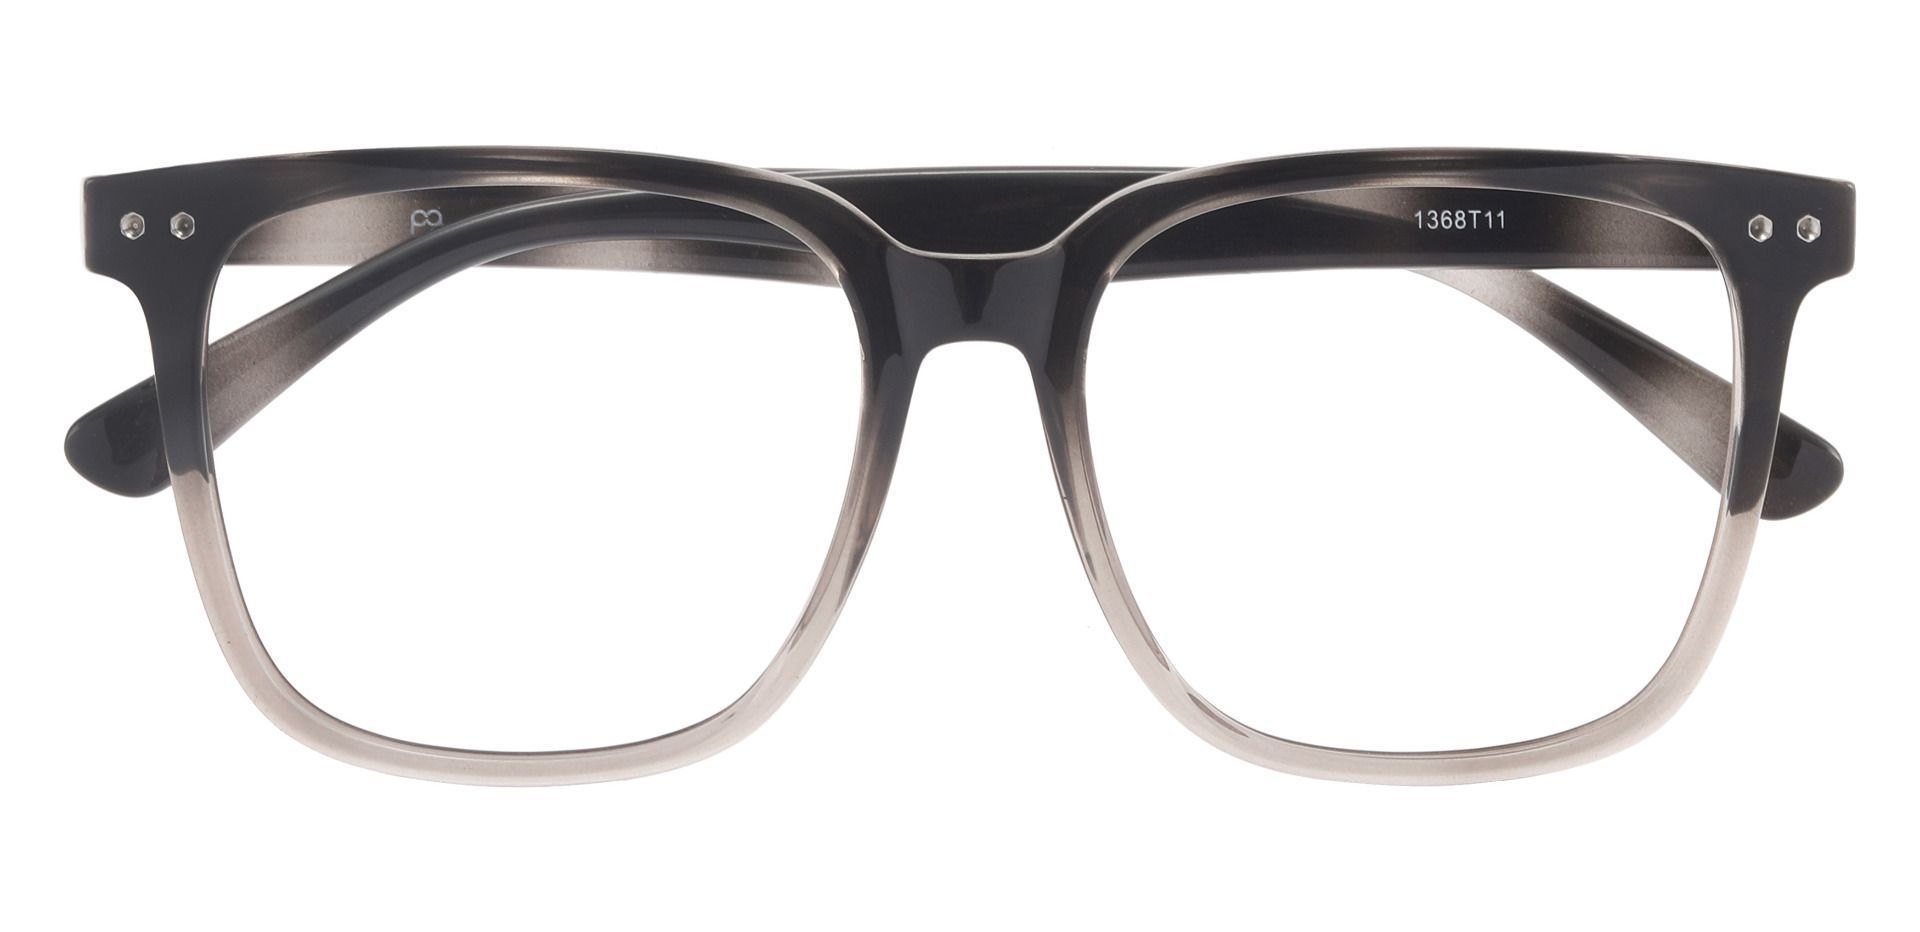 McCormick Square Prescription Glasses - Black